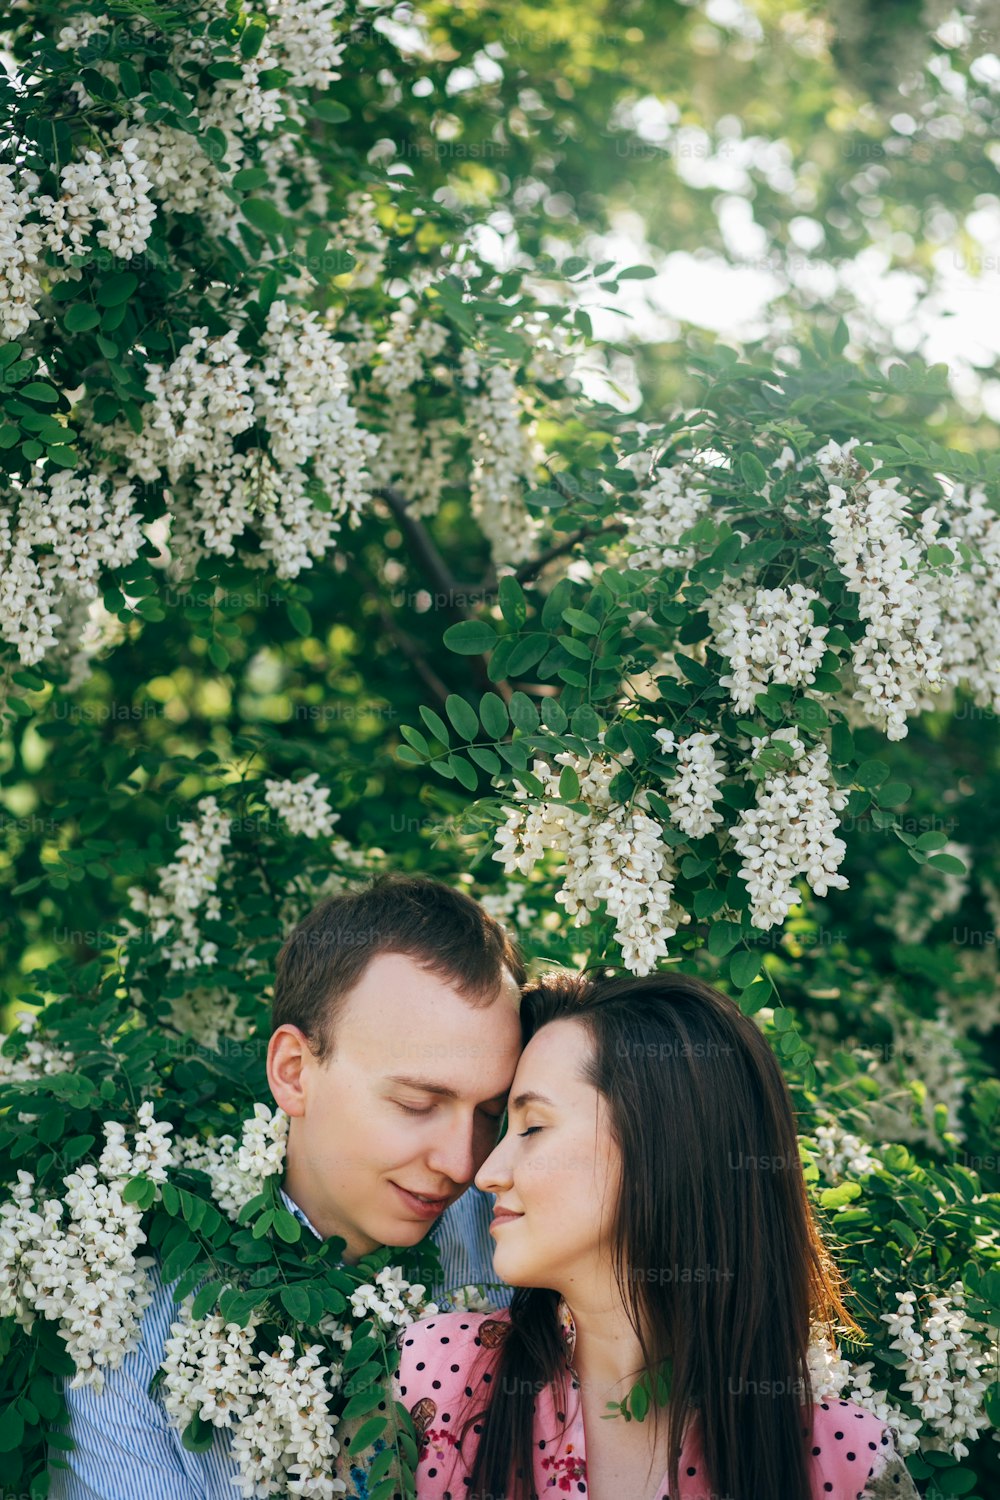 Hermosa pareja joven abrazada suavemente en hojas verdes y flores blancas en el jardín de primavera bajo el sol. Familia feliz abrazada en acacia floreciente a la luz del sol. Momentos románticos.